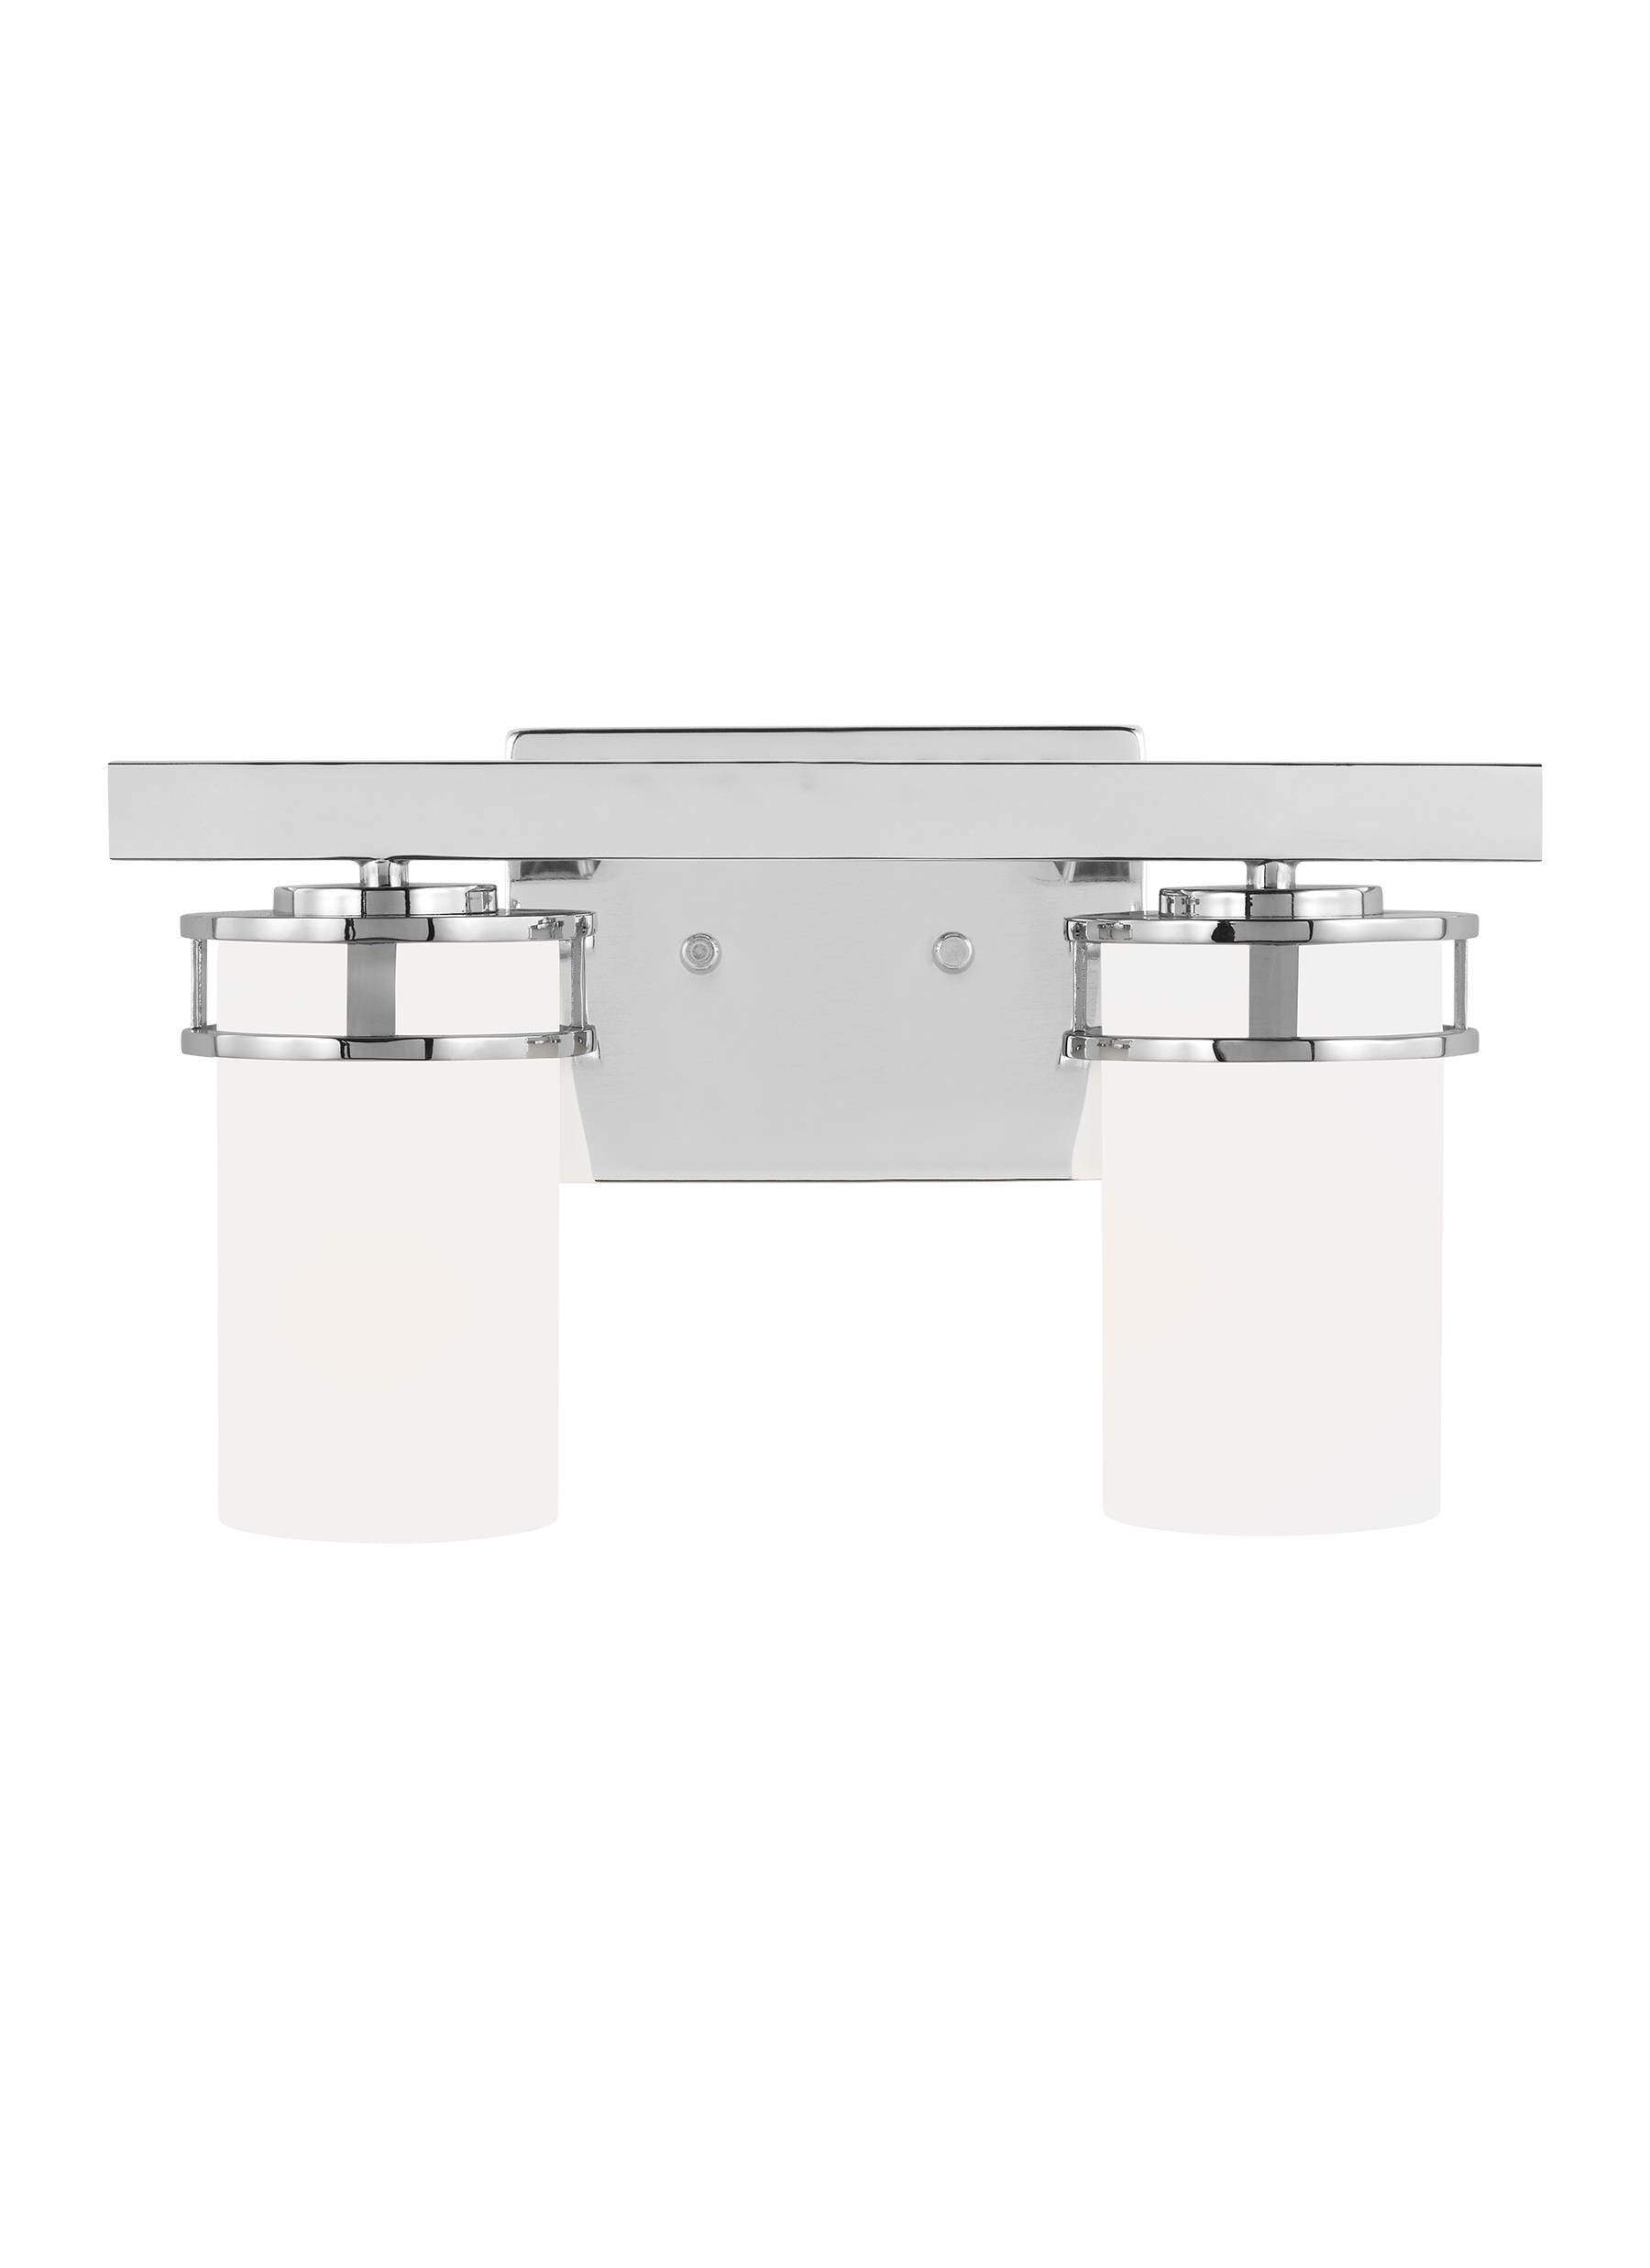 Sea Gull Robie 2-Light Bathroom Vanity Light in Chrome - 4421602EN3-05